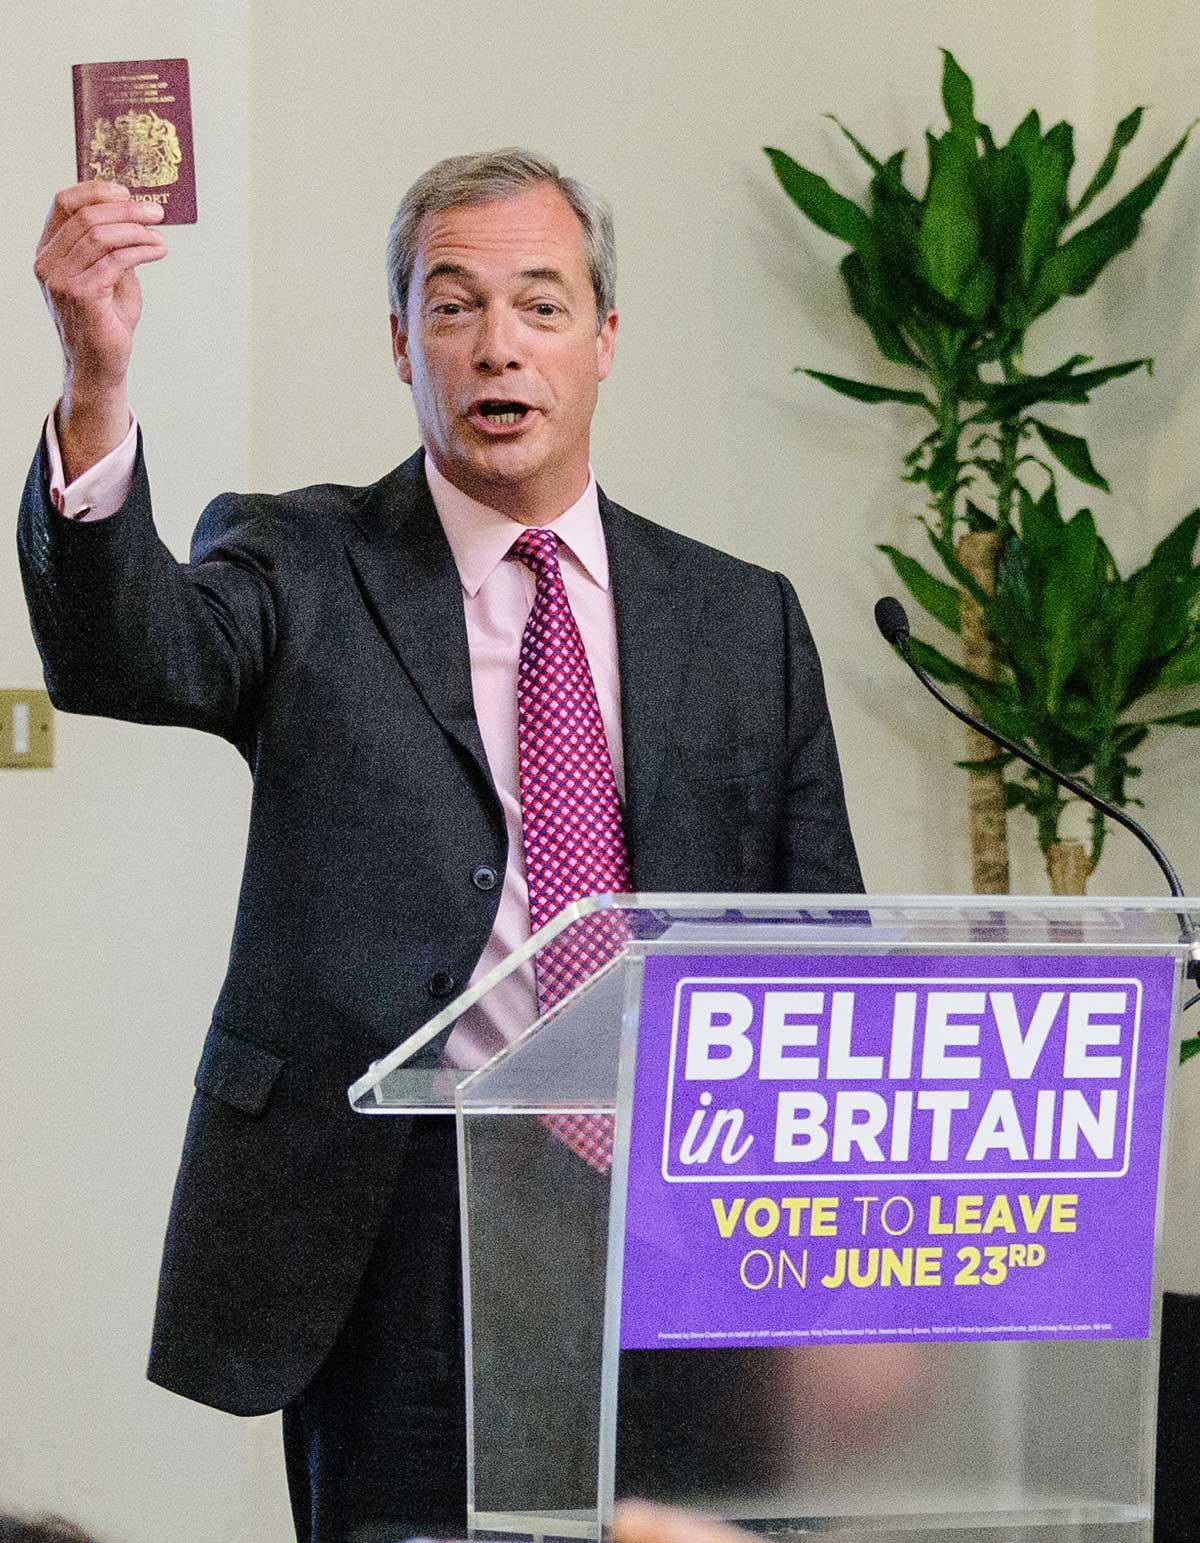 ”Vi har inte ens brittiska pass längre”, sa Nigel Farage vid mötet.